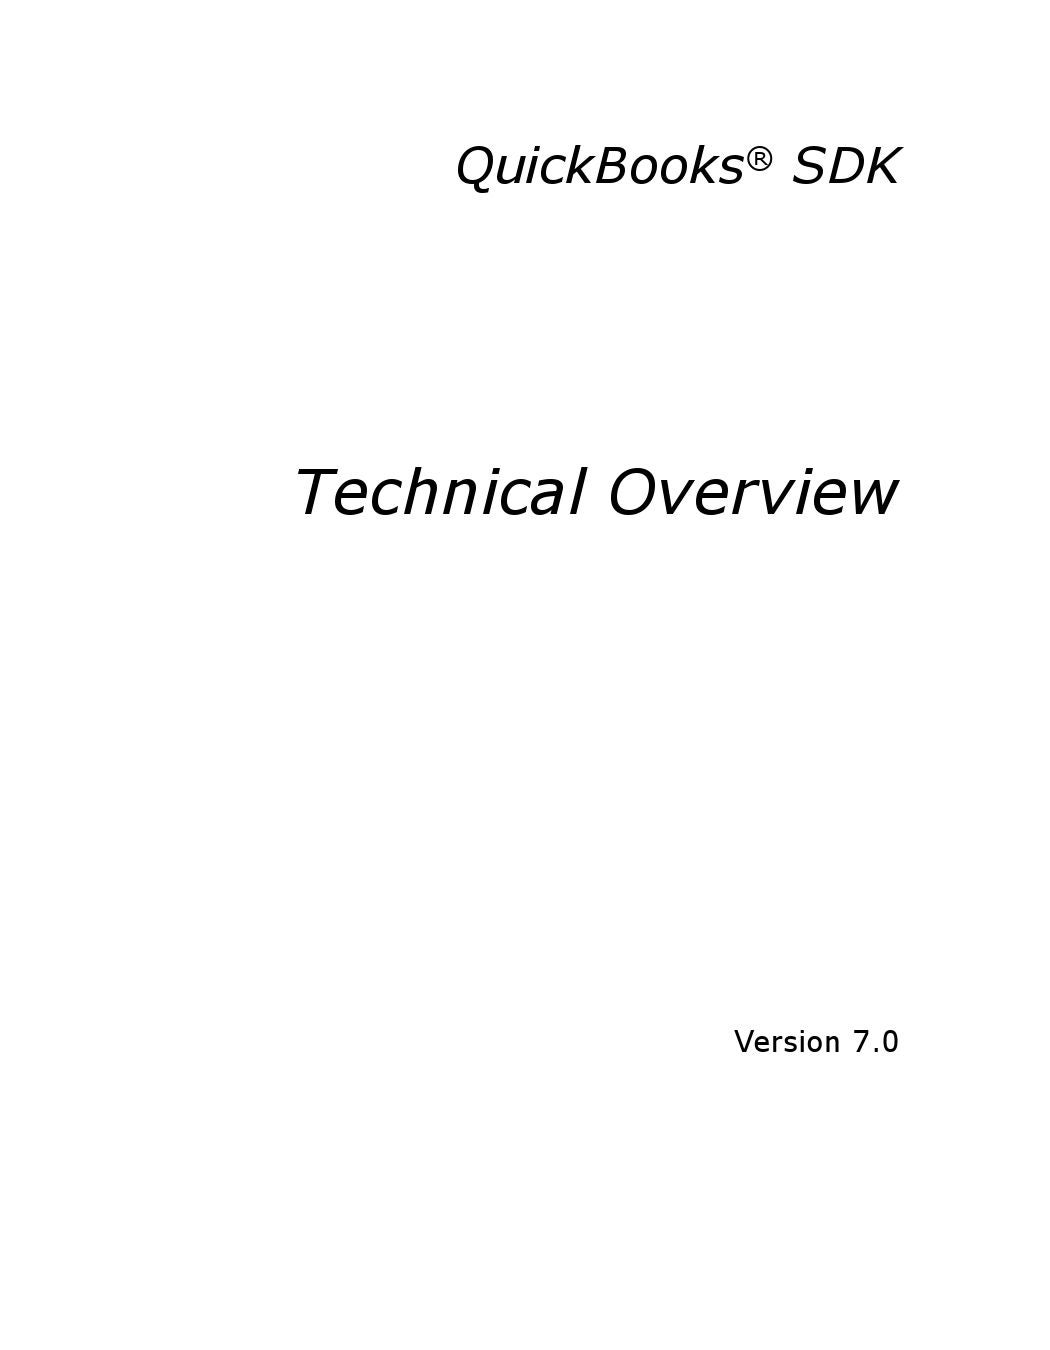 intuit quickbooks sdk documentation